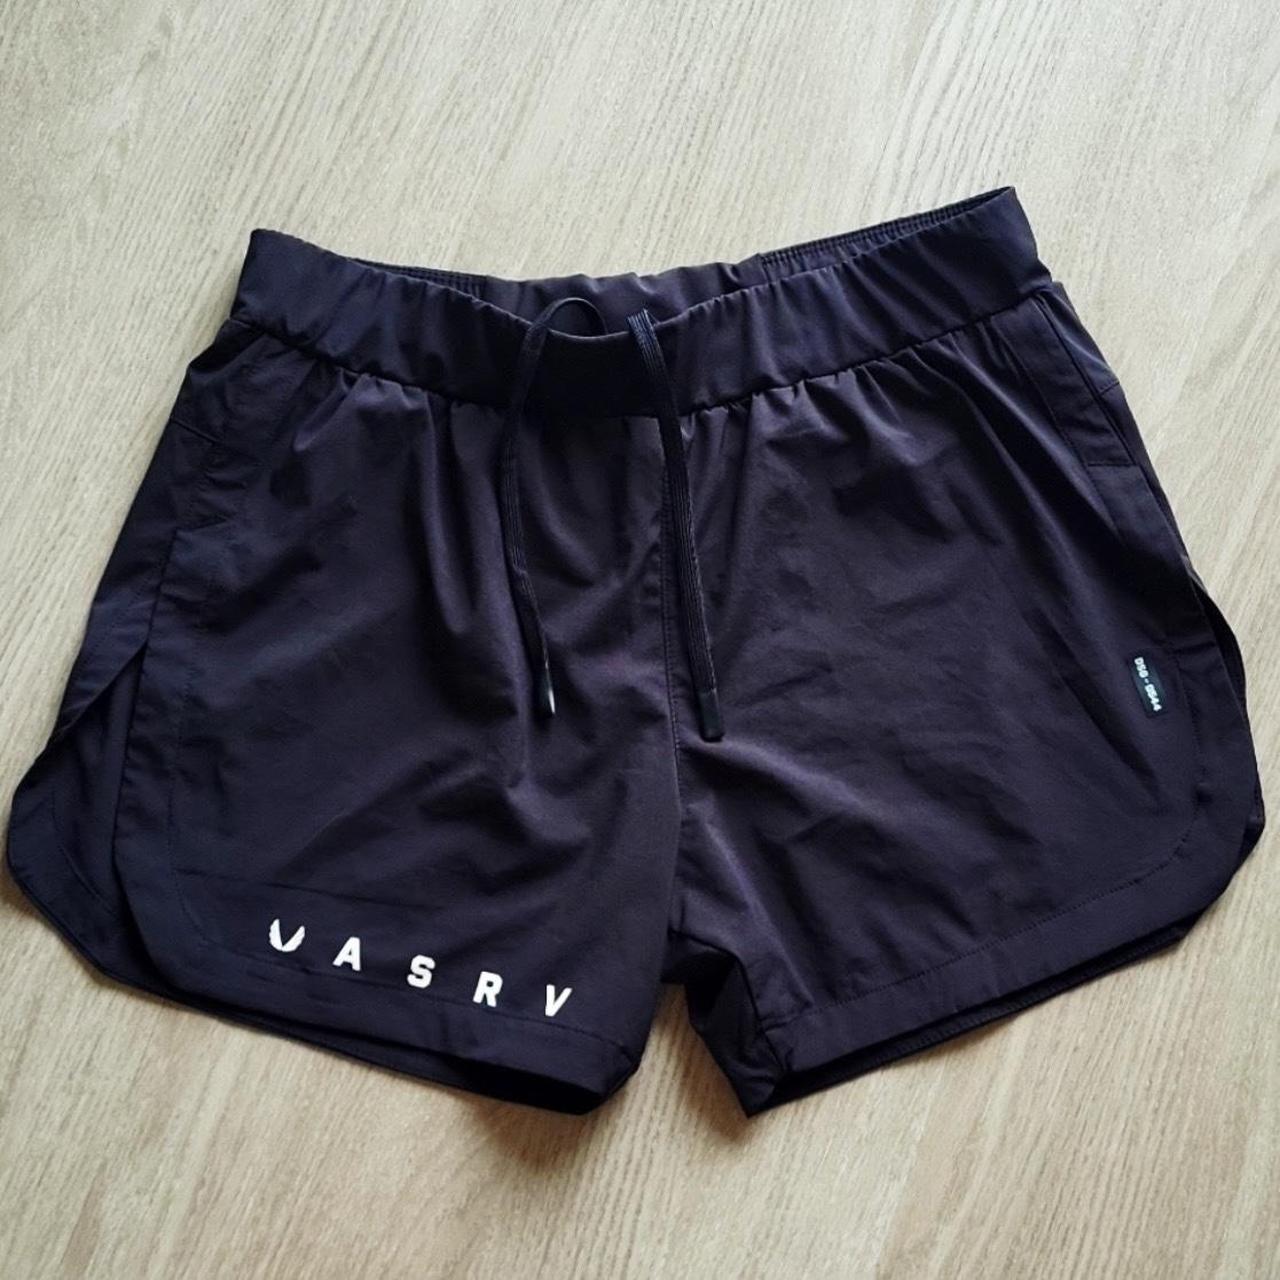 ASRV Men's Black and White Shorts | Depop